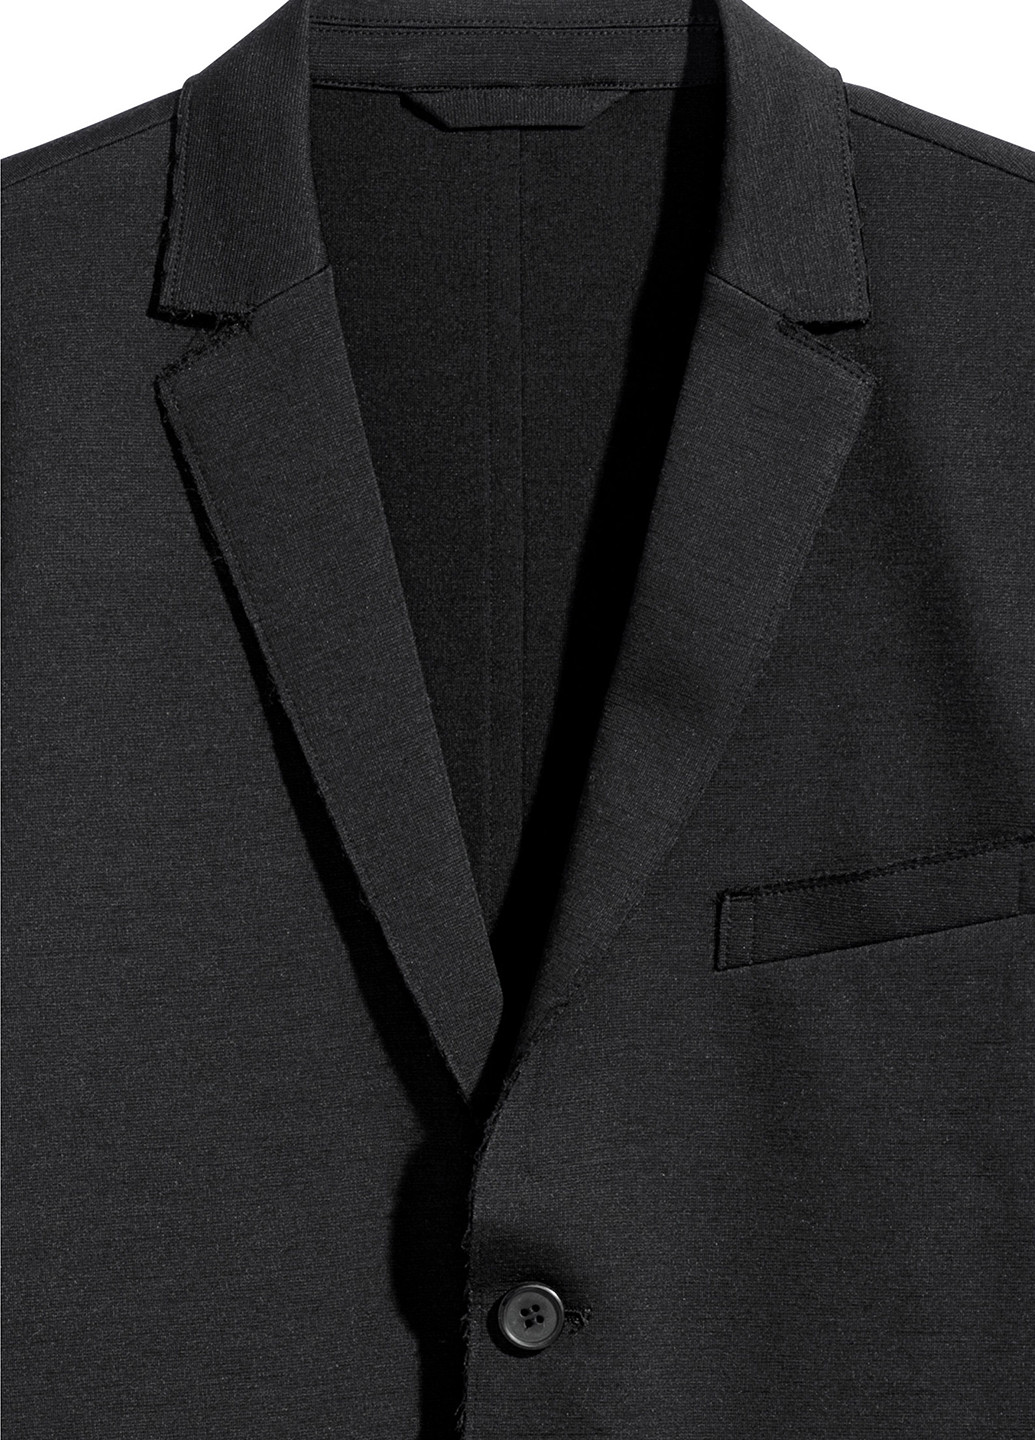 Пиджак H&M однотонный чёрный деловой шерсть, хлопок, полиамид